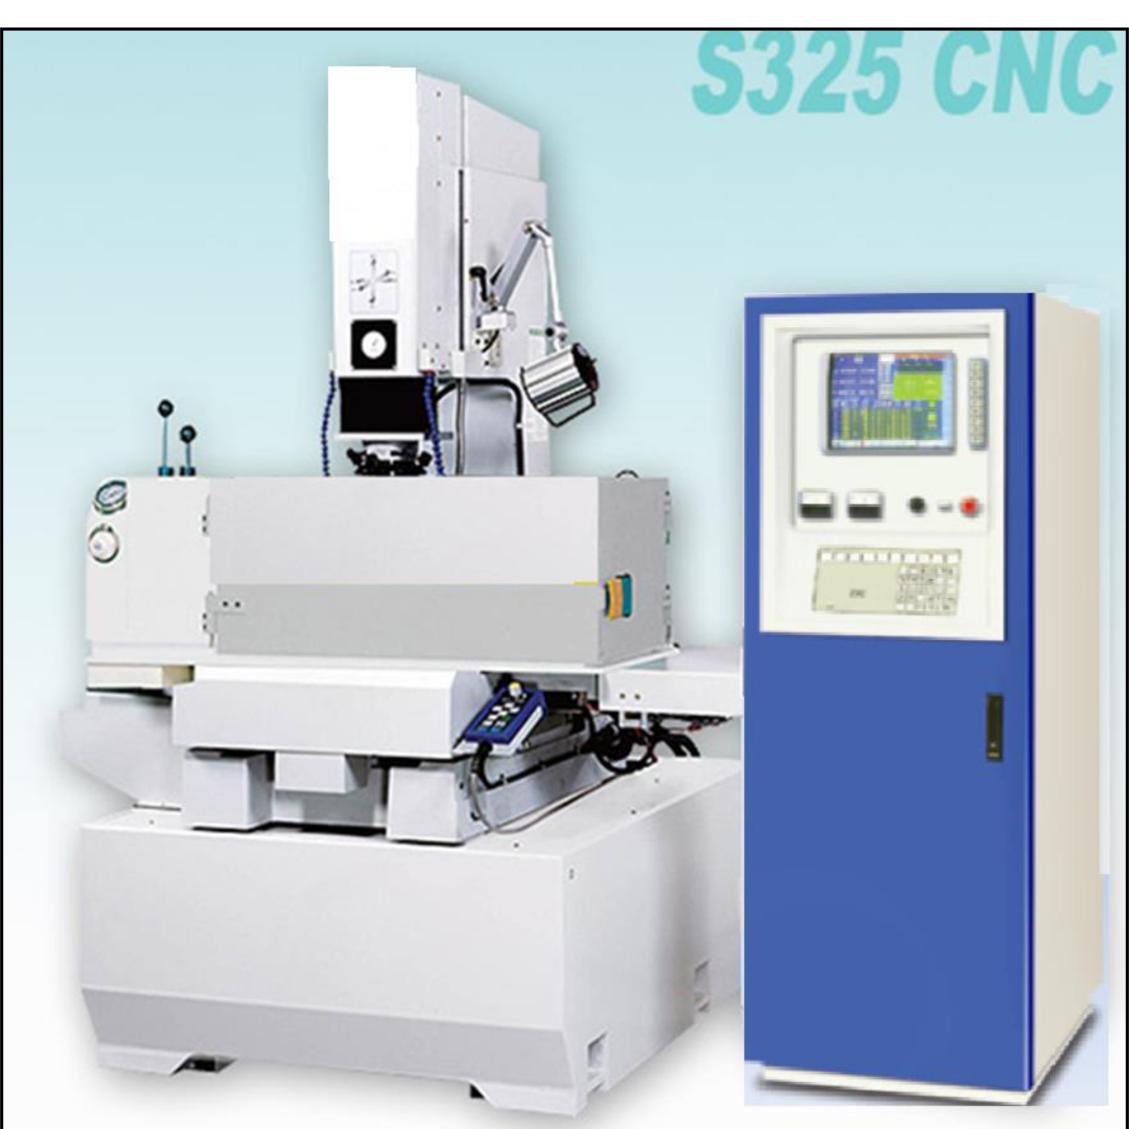 S325 CNC系列-S325 CNC